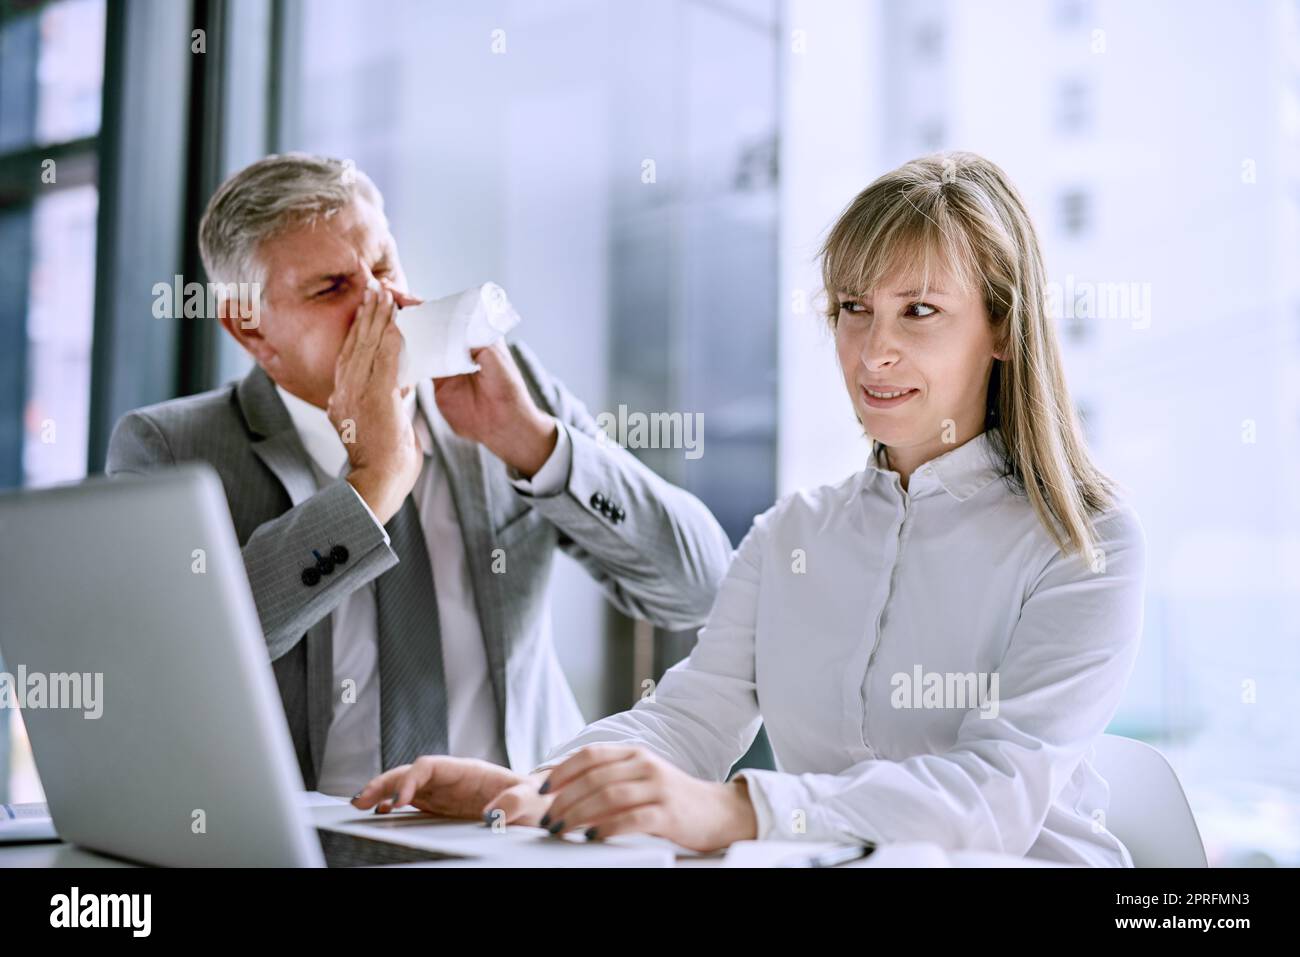 Entschuldigung, während ich niesen. Ein kranker Geschäftsmann niest vor einer Geschäftsfrau im Büro. Stockfoto